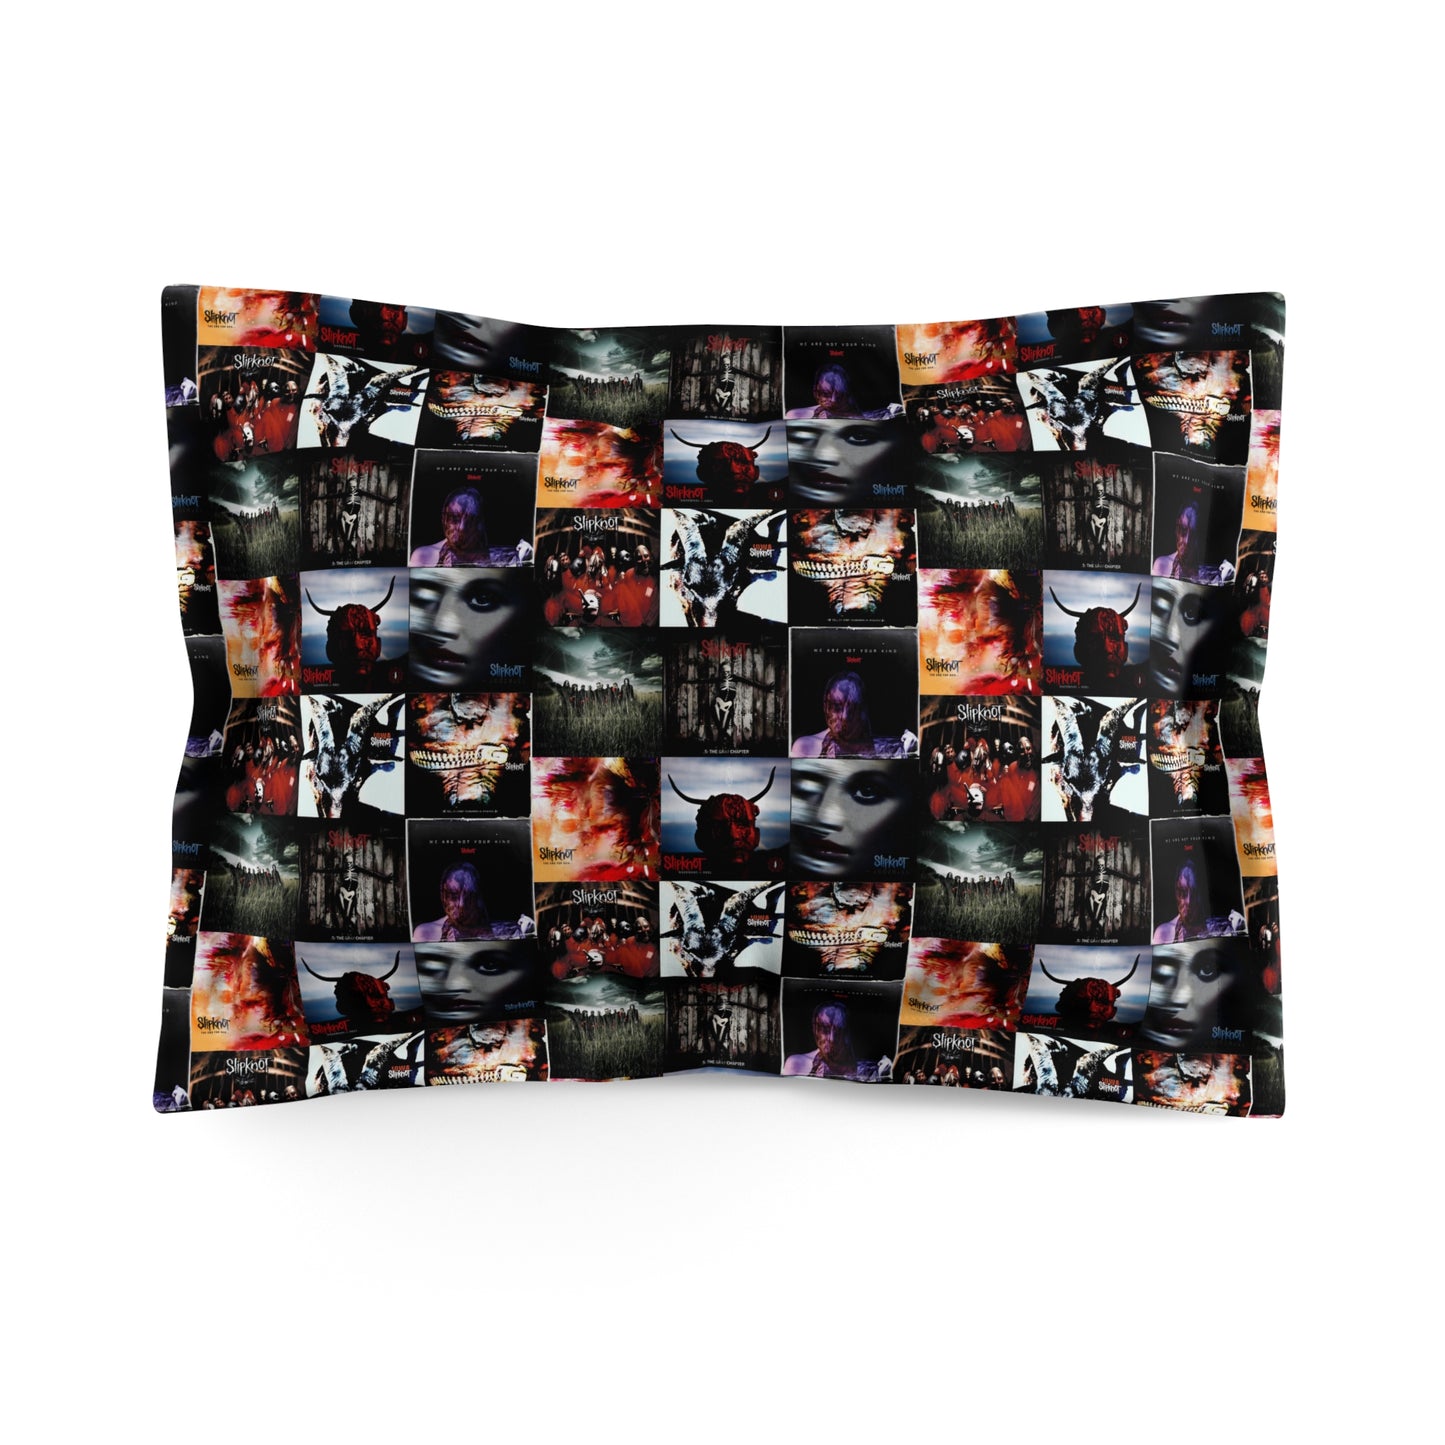 Slipknot Album Art Collage Microfiber Pillow Sham